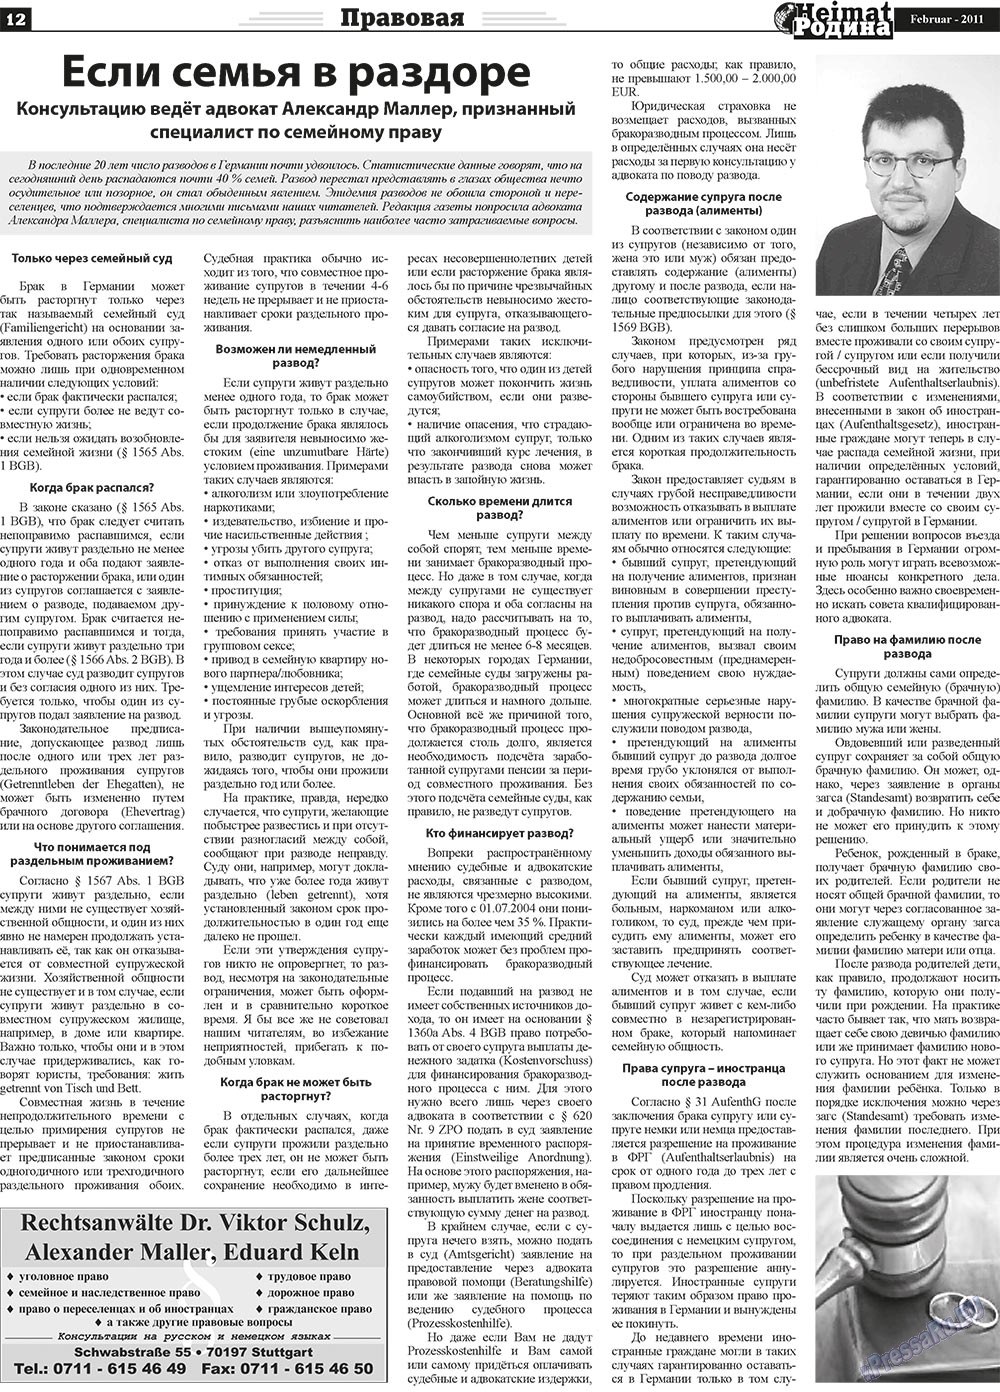 Heimat-Родина (газета). 2011 год, номер 2, стр. 12